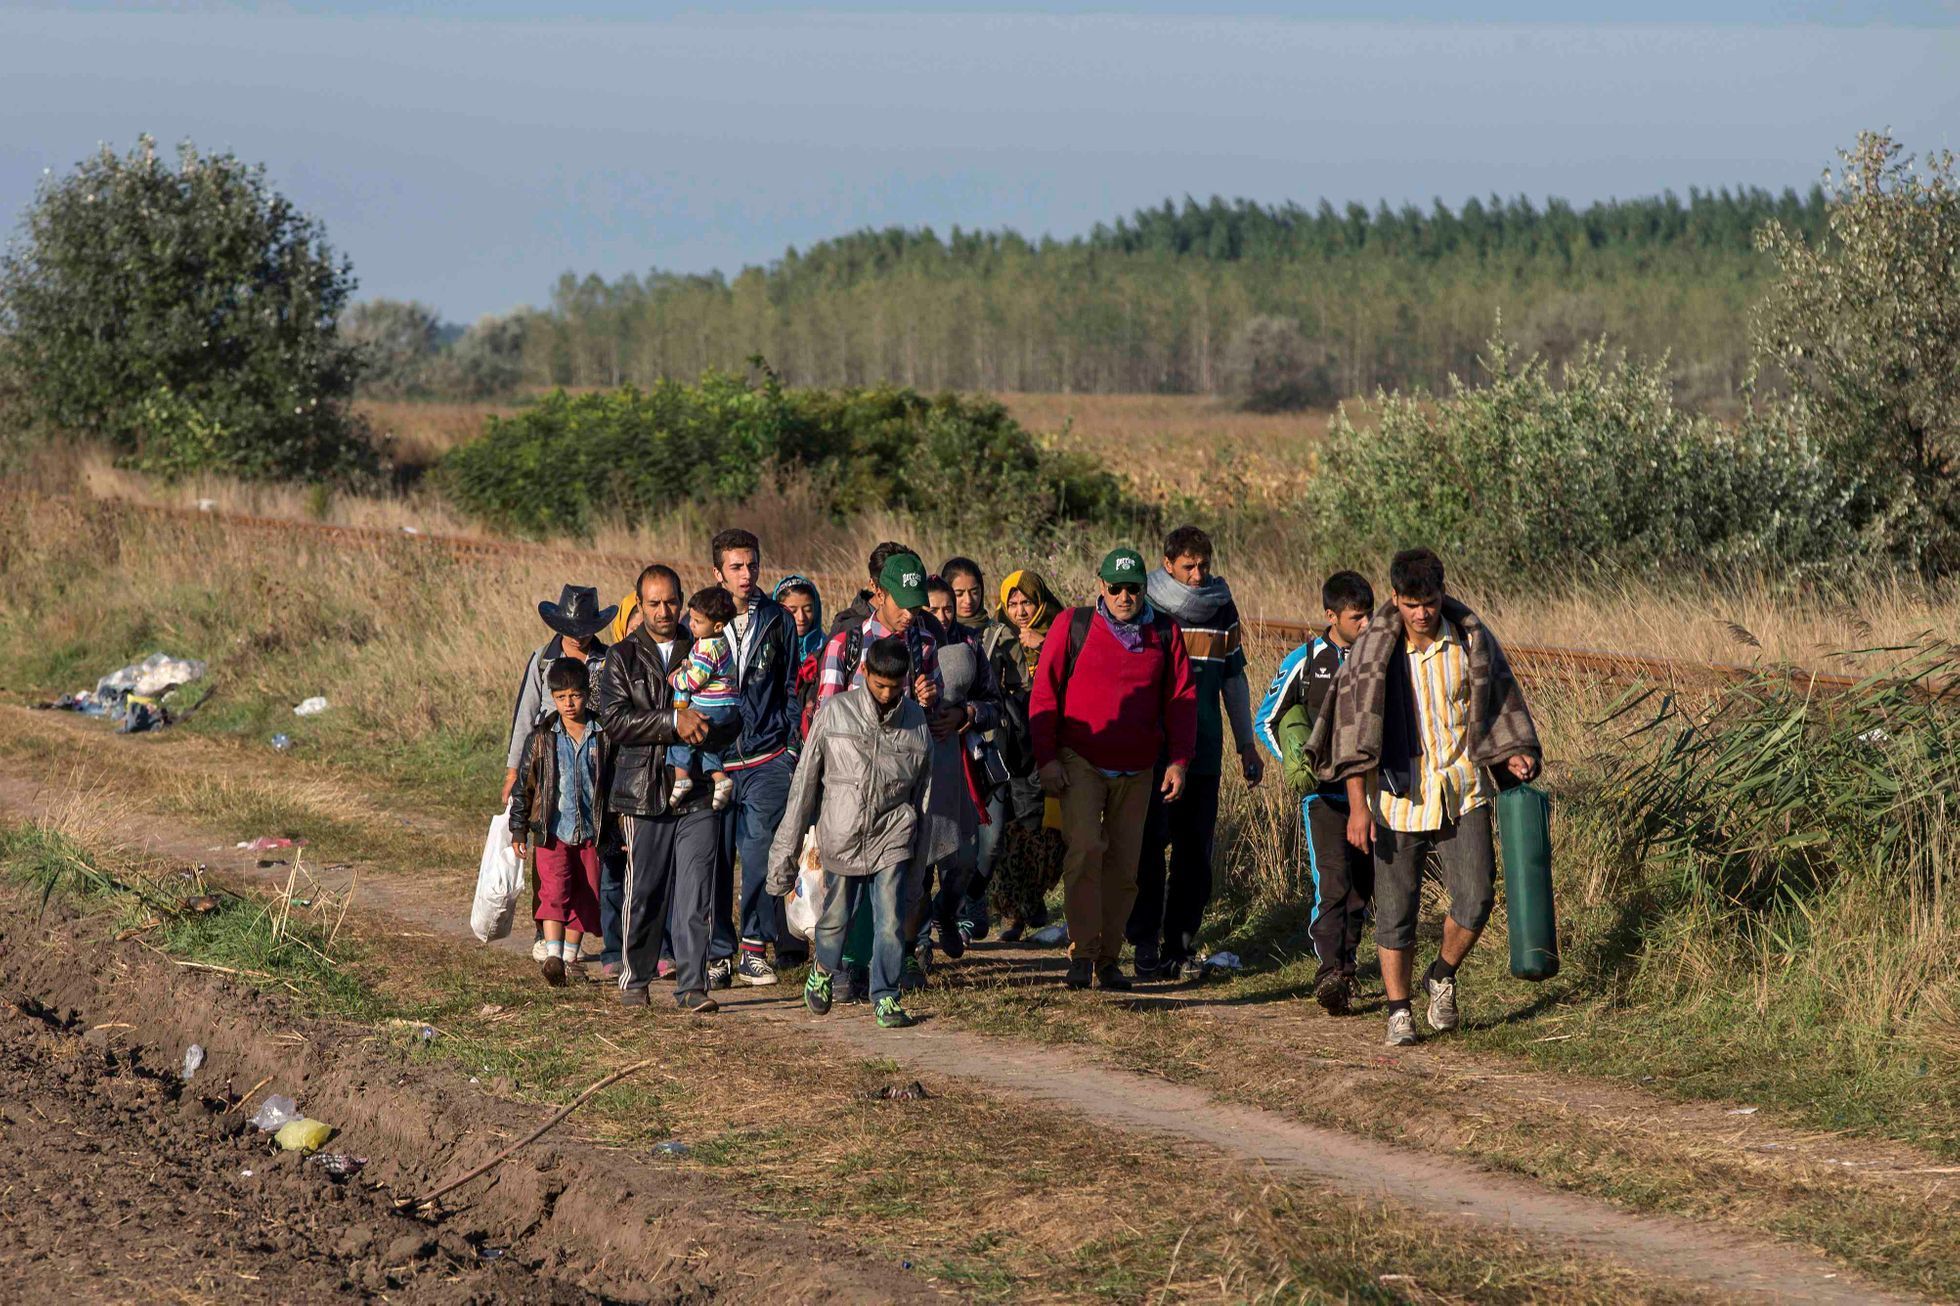 Uprchlíci opouštění maďarský tábor